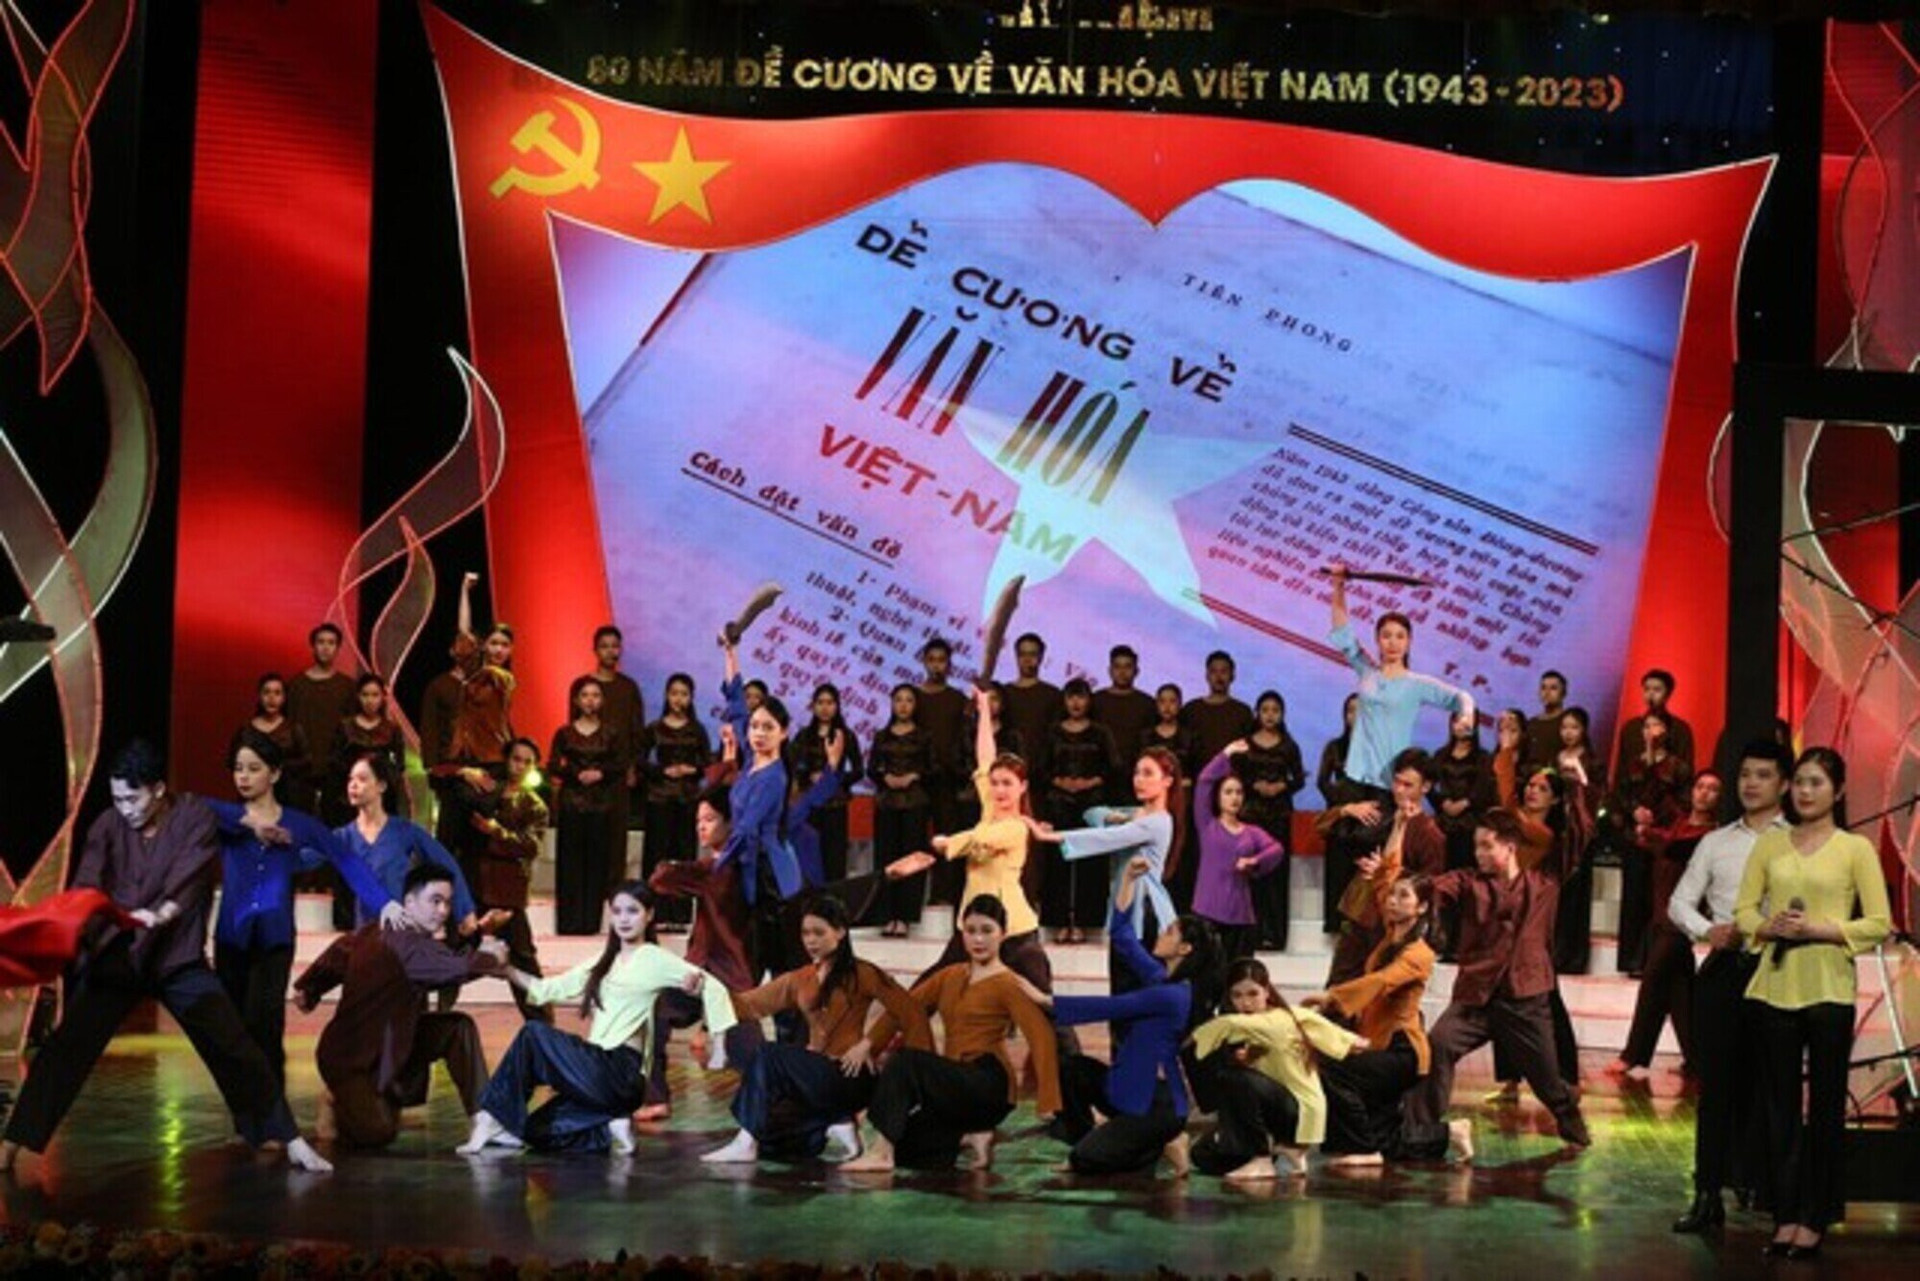 Kỷ niệm 80 năm ra đời Đề cương về Văn hóa Việt Nam.